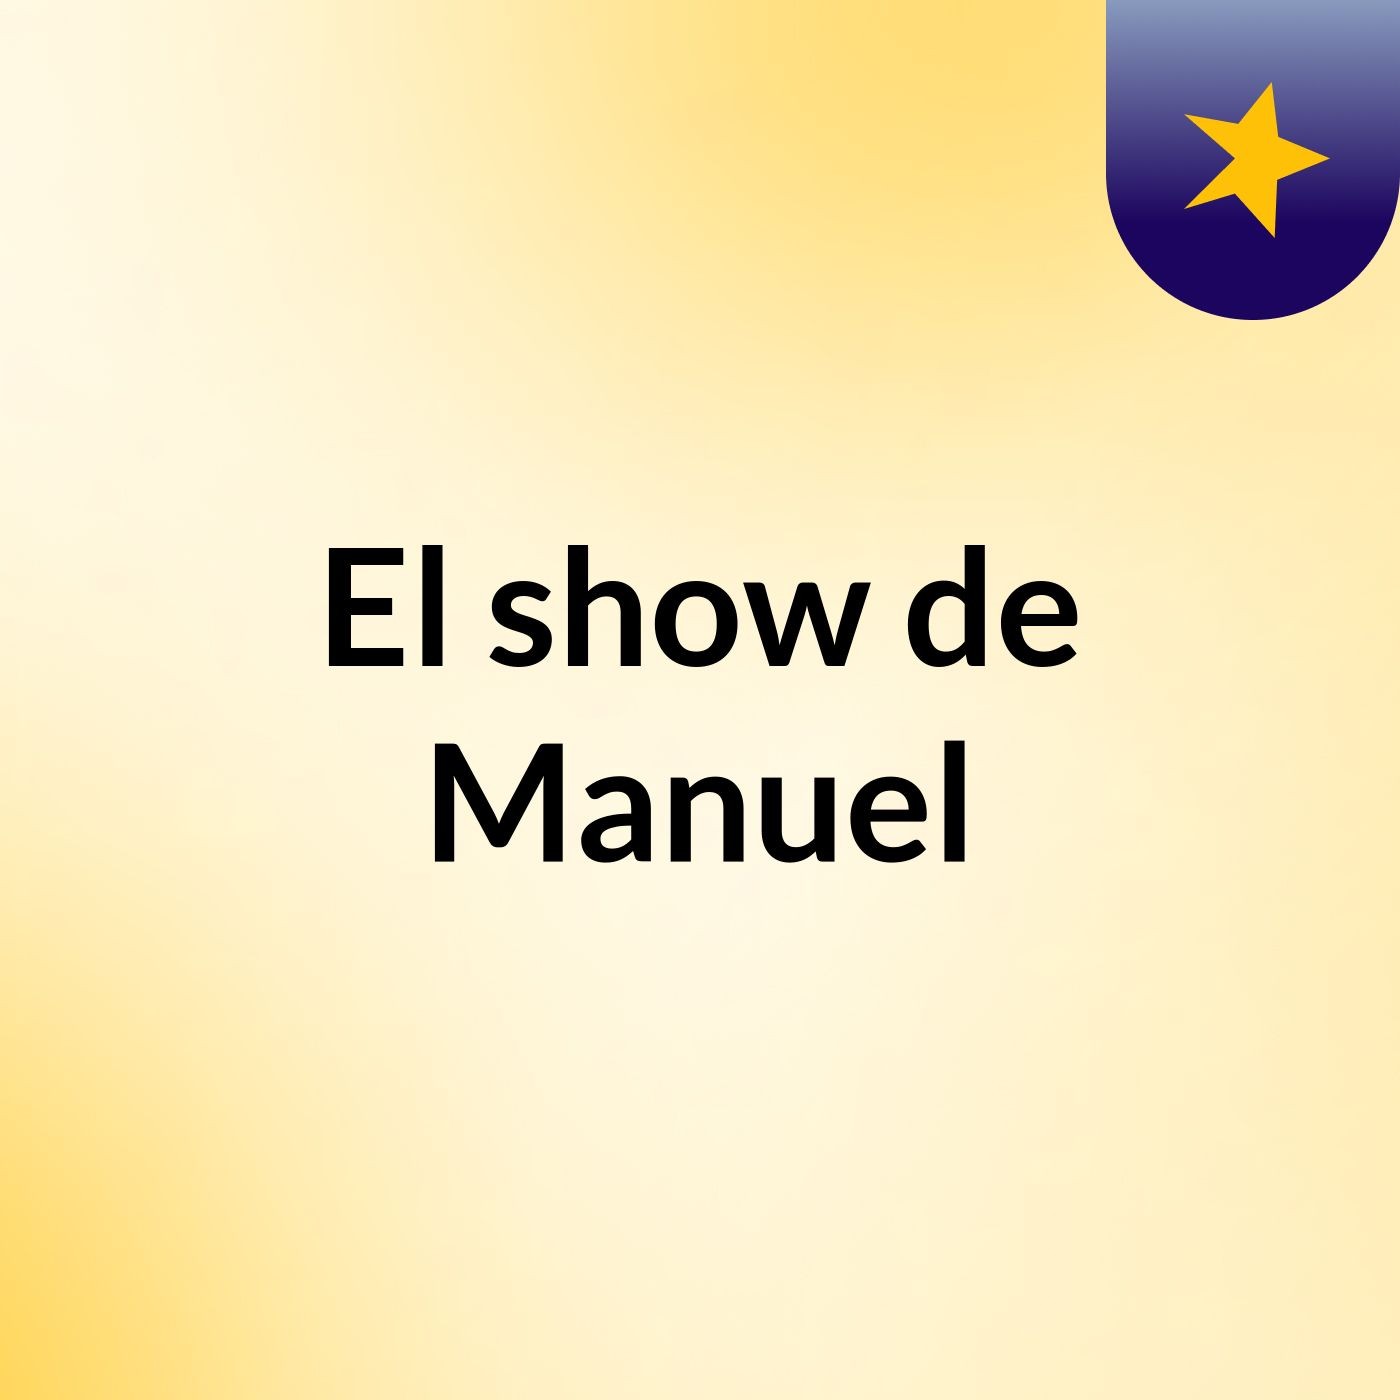 El show de Manuel